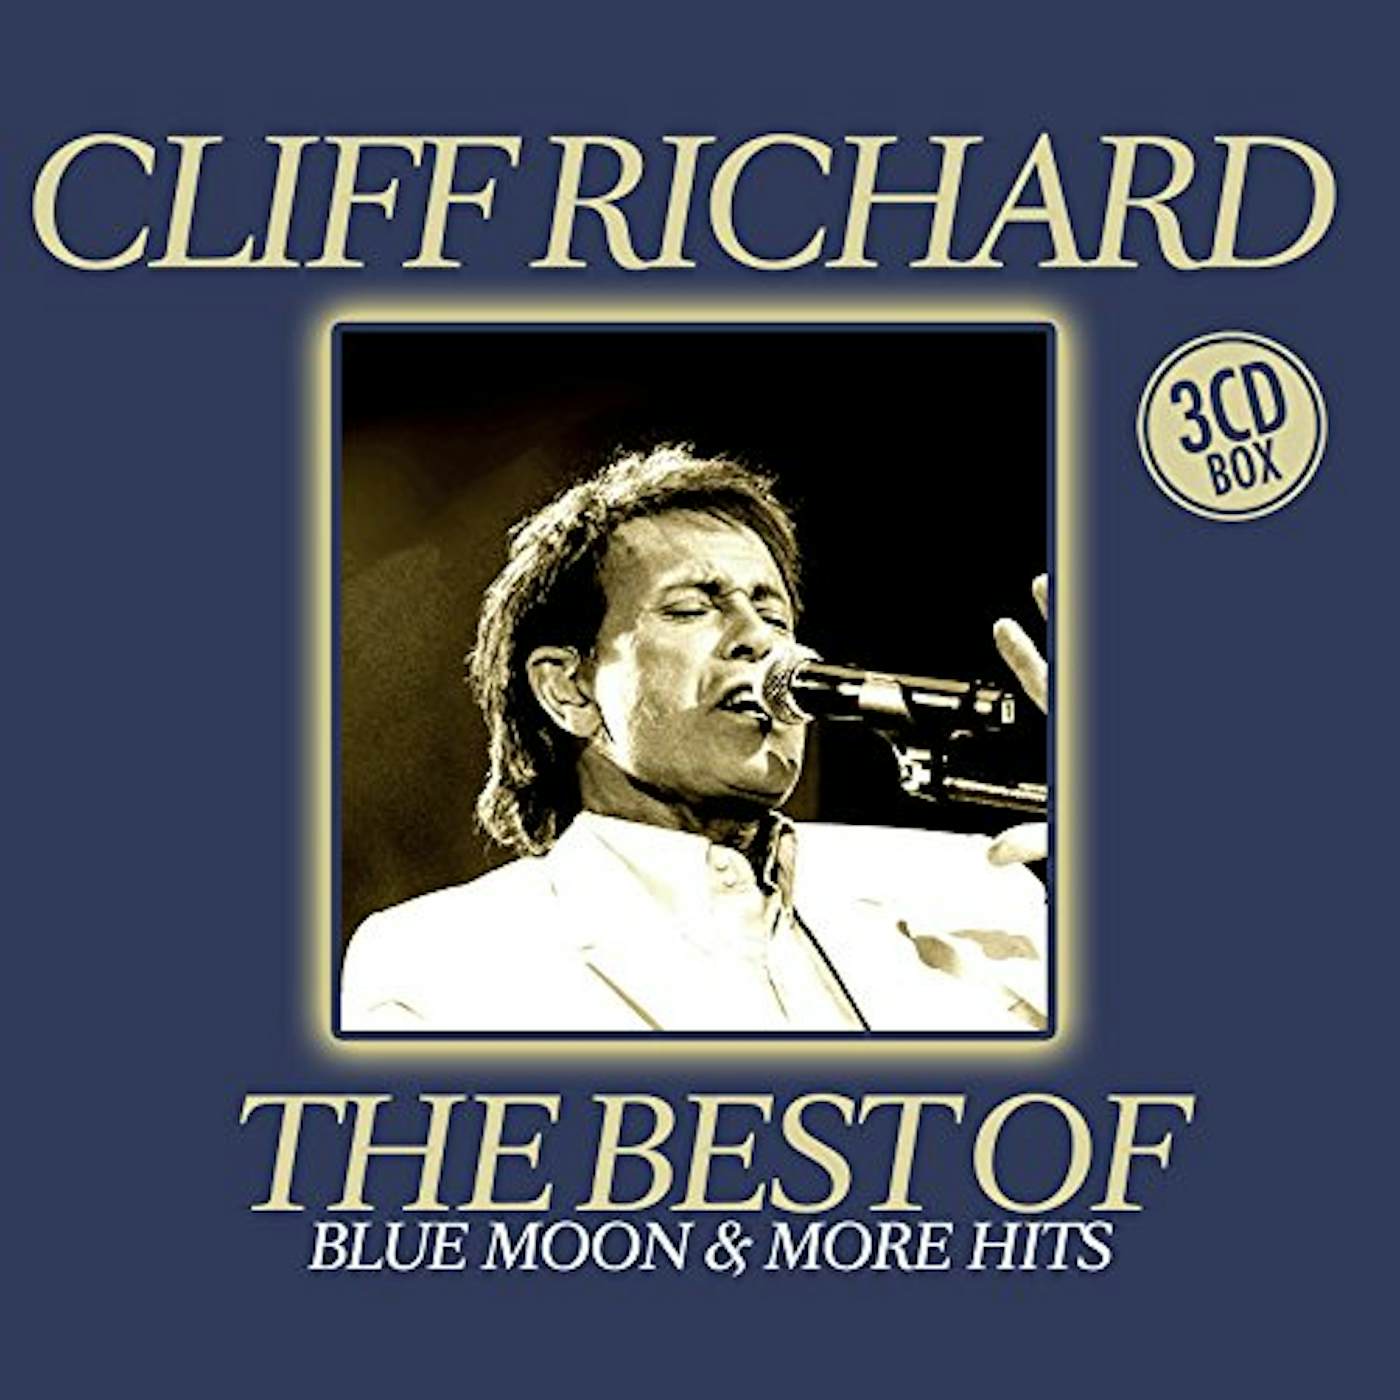 Cliff Richard BEST OF CD